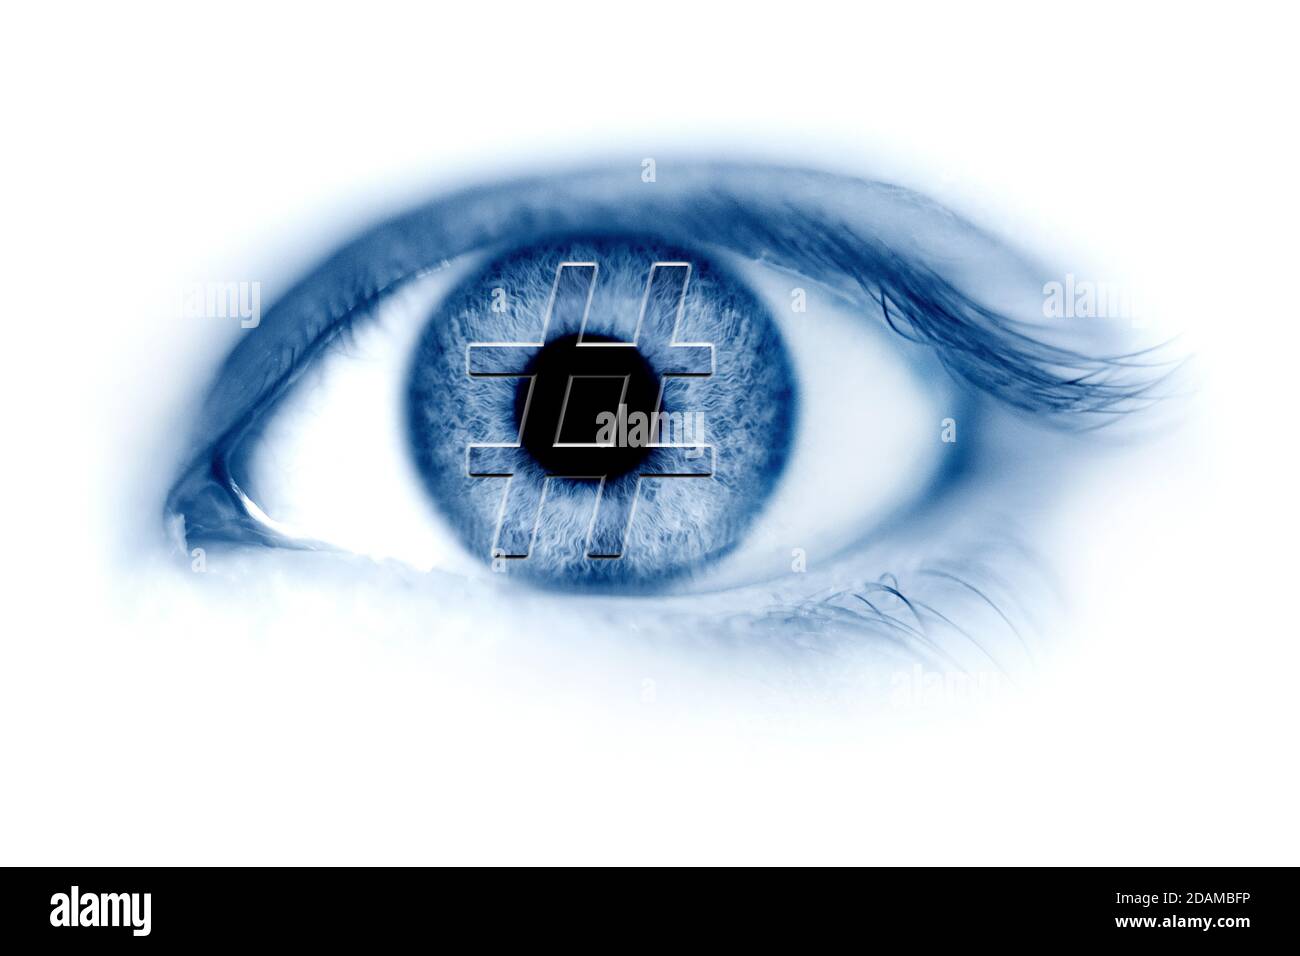 Human eye with hashtag symbol, illustration. Stock Photo